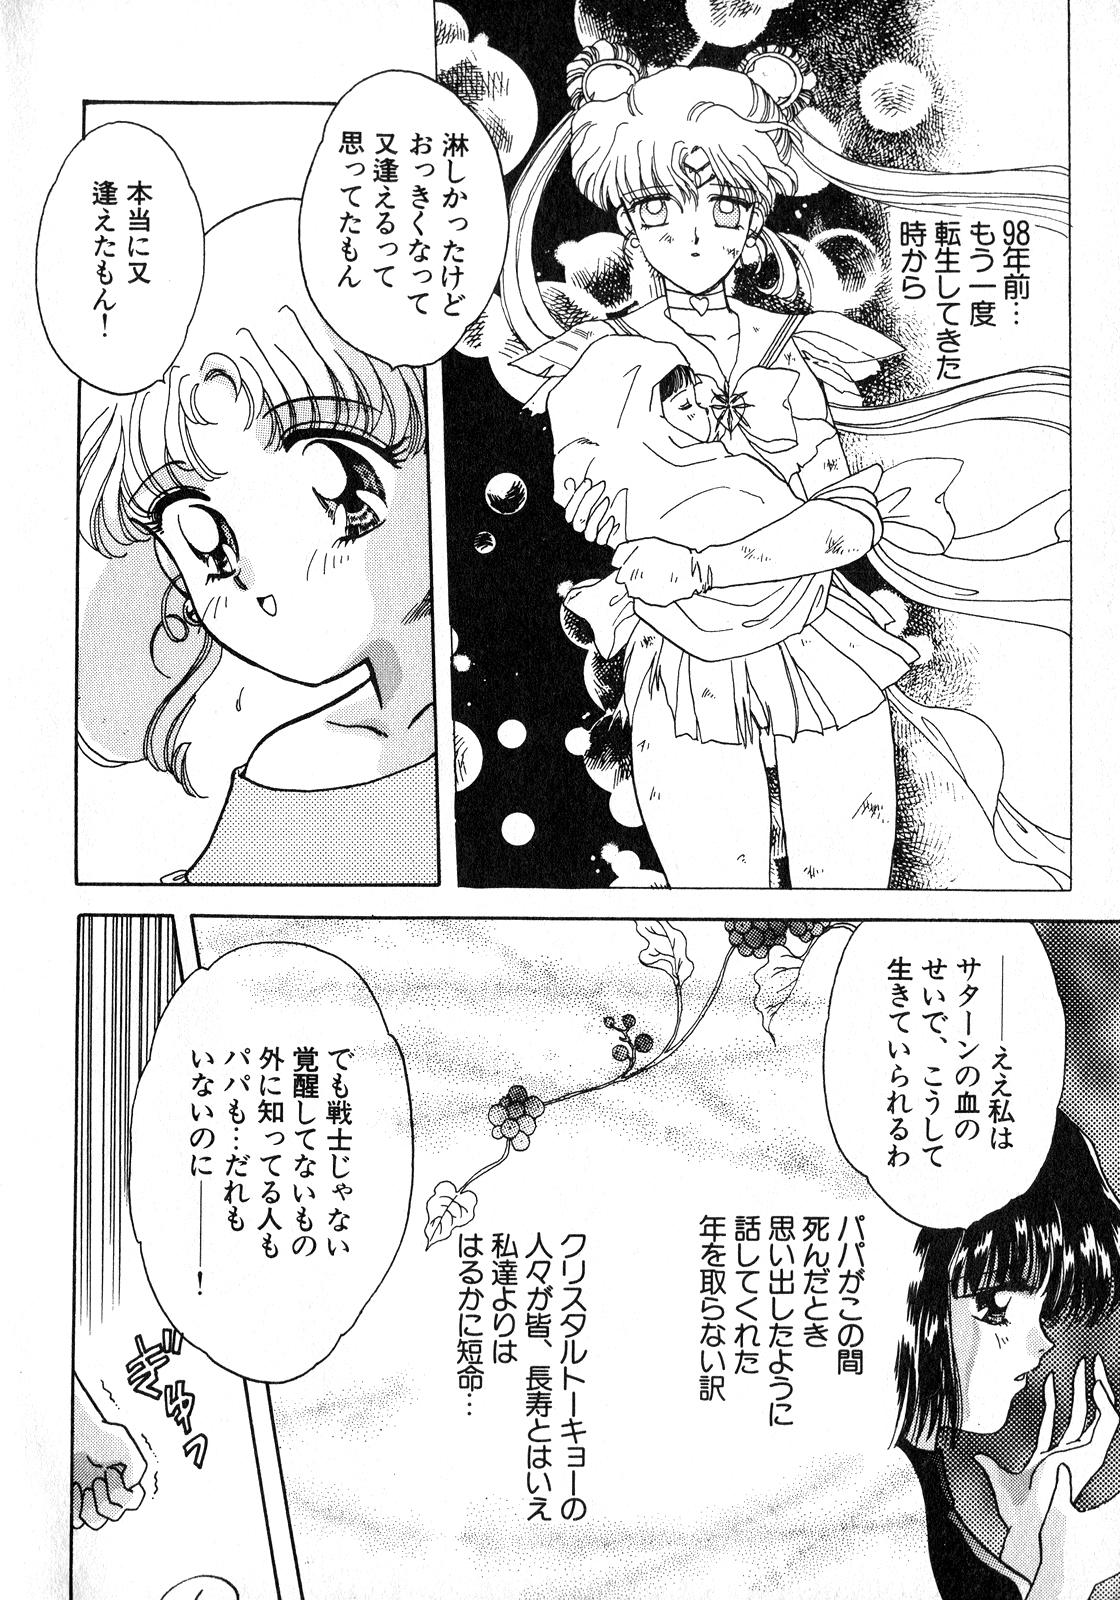 Blow Job Lunatic Party 8 - Sailor moon Cam Porn - Page 7